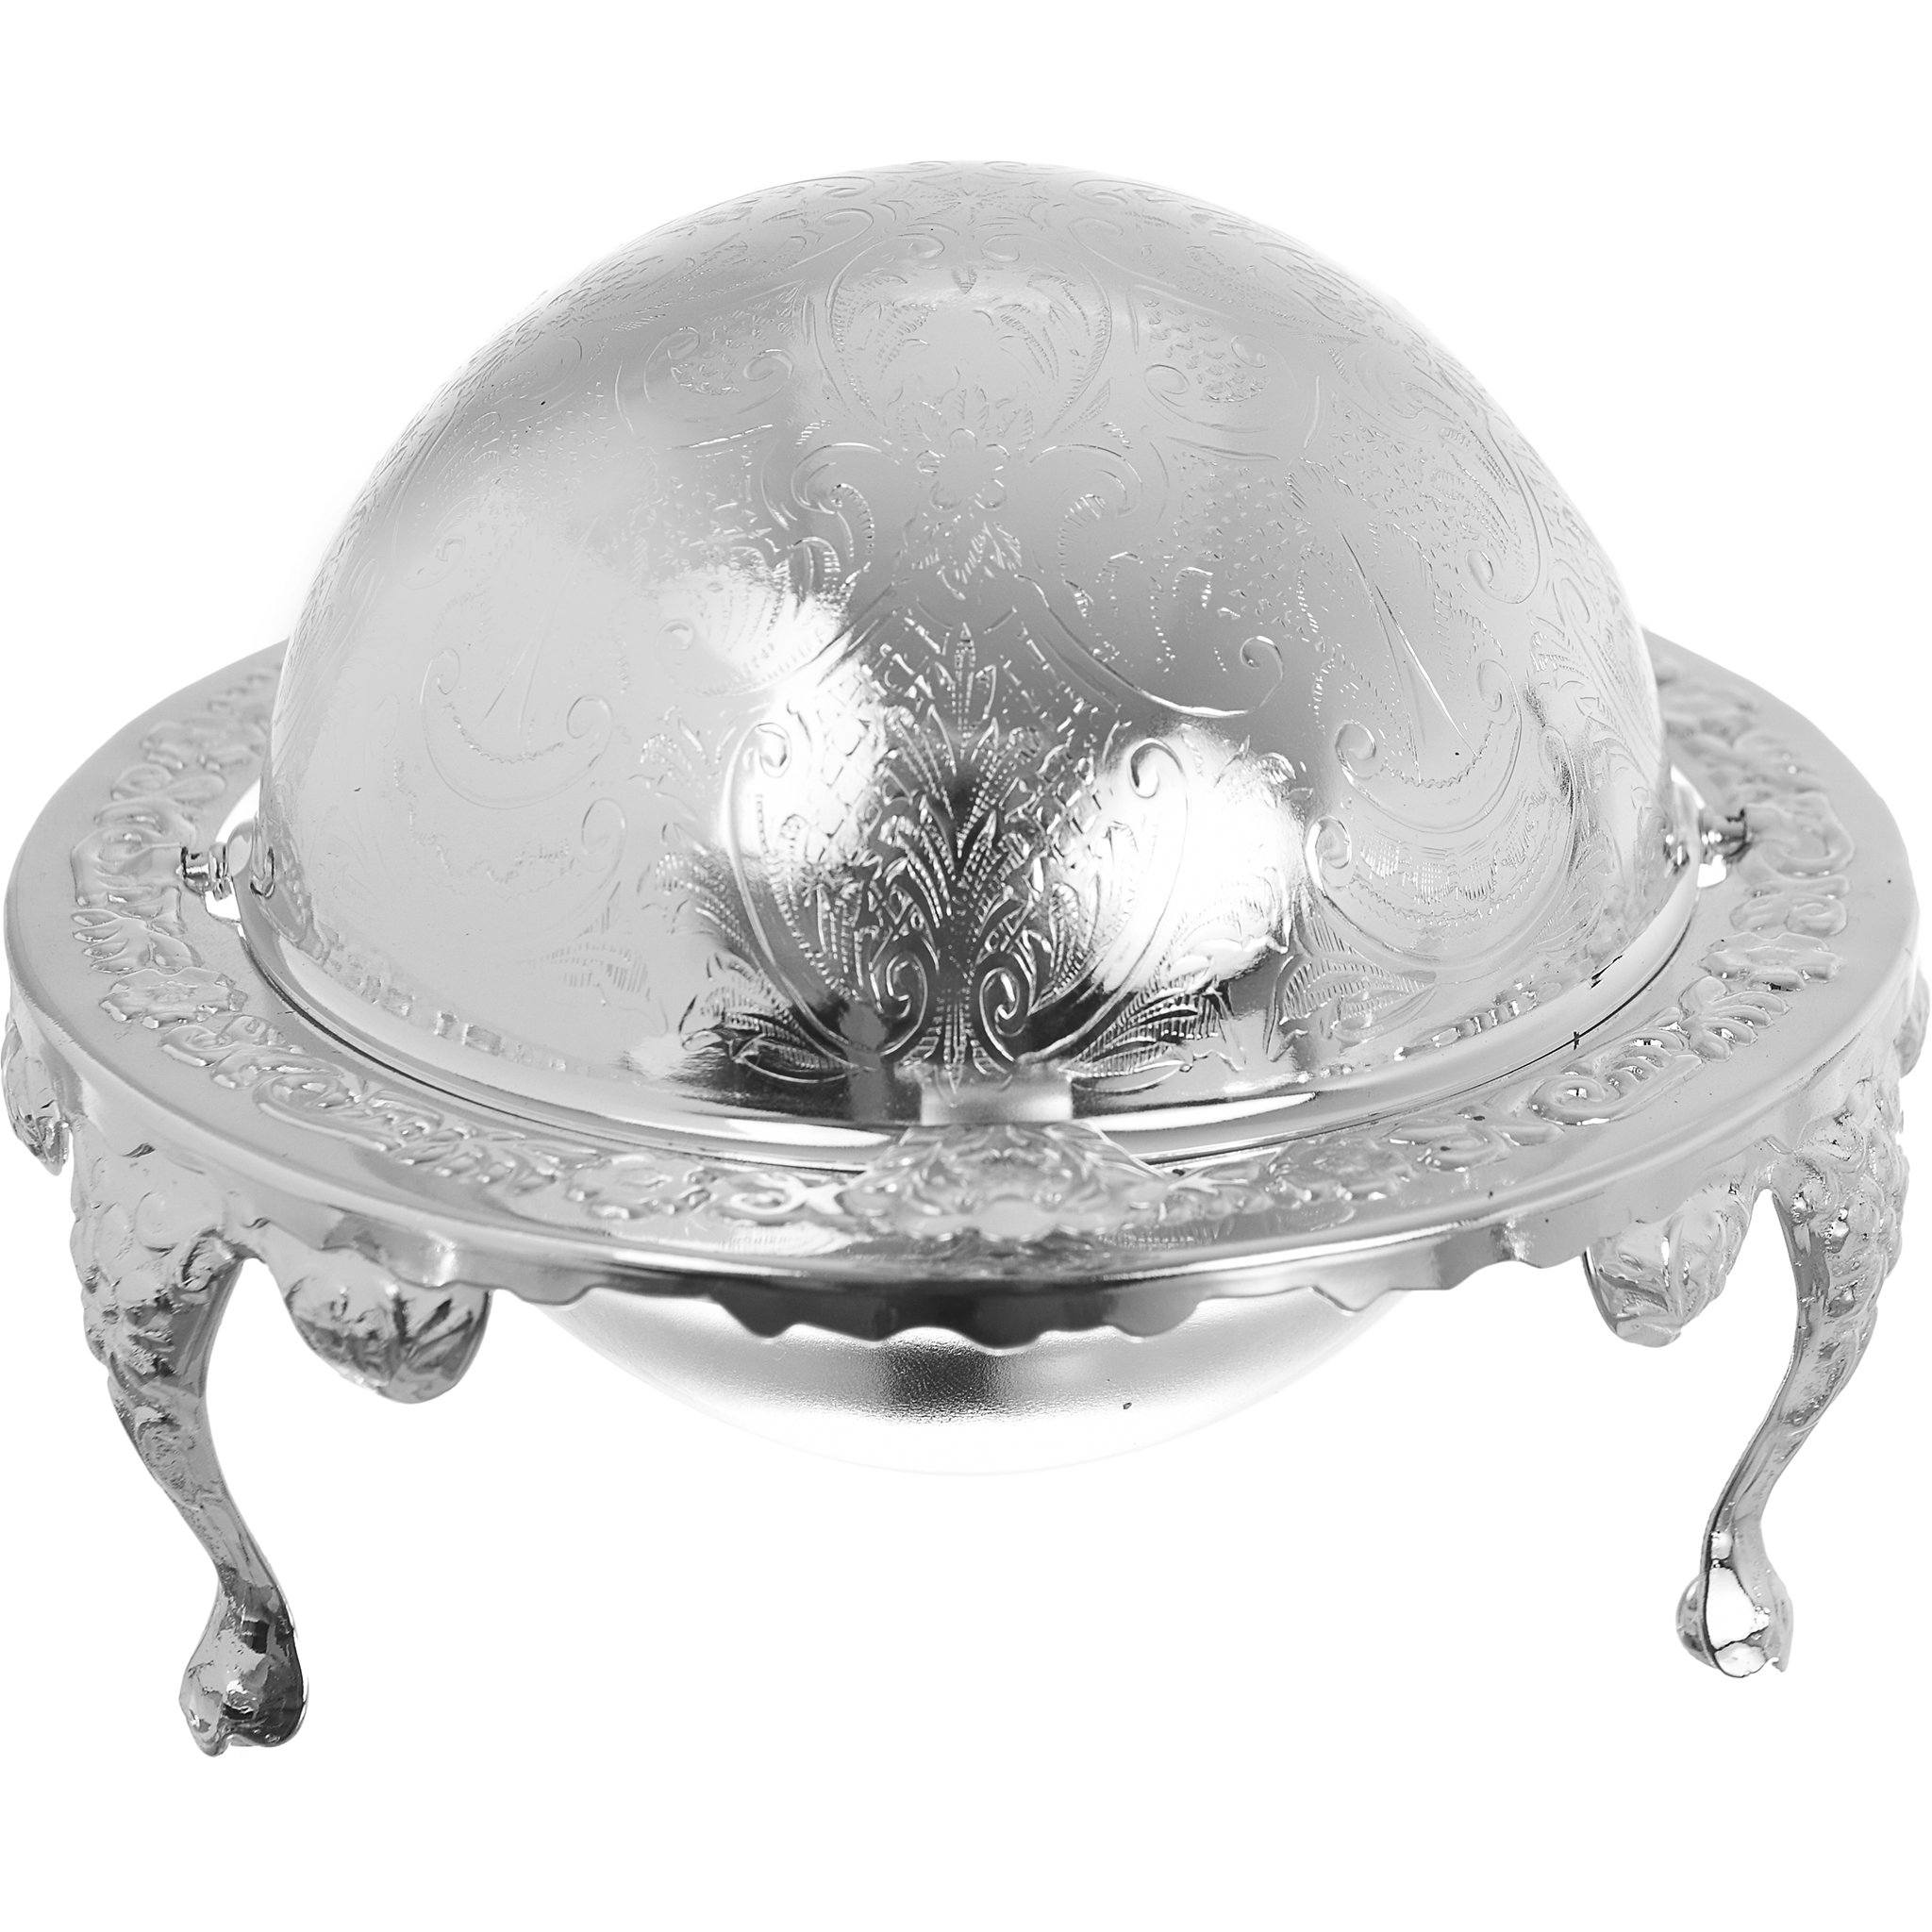 كوين آن - طبق زبدة دائري بغطاء وأرجل - معدن وزجاج مطلي بالفضة - 14x11 سم - 26000260